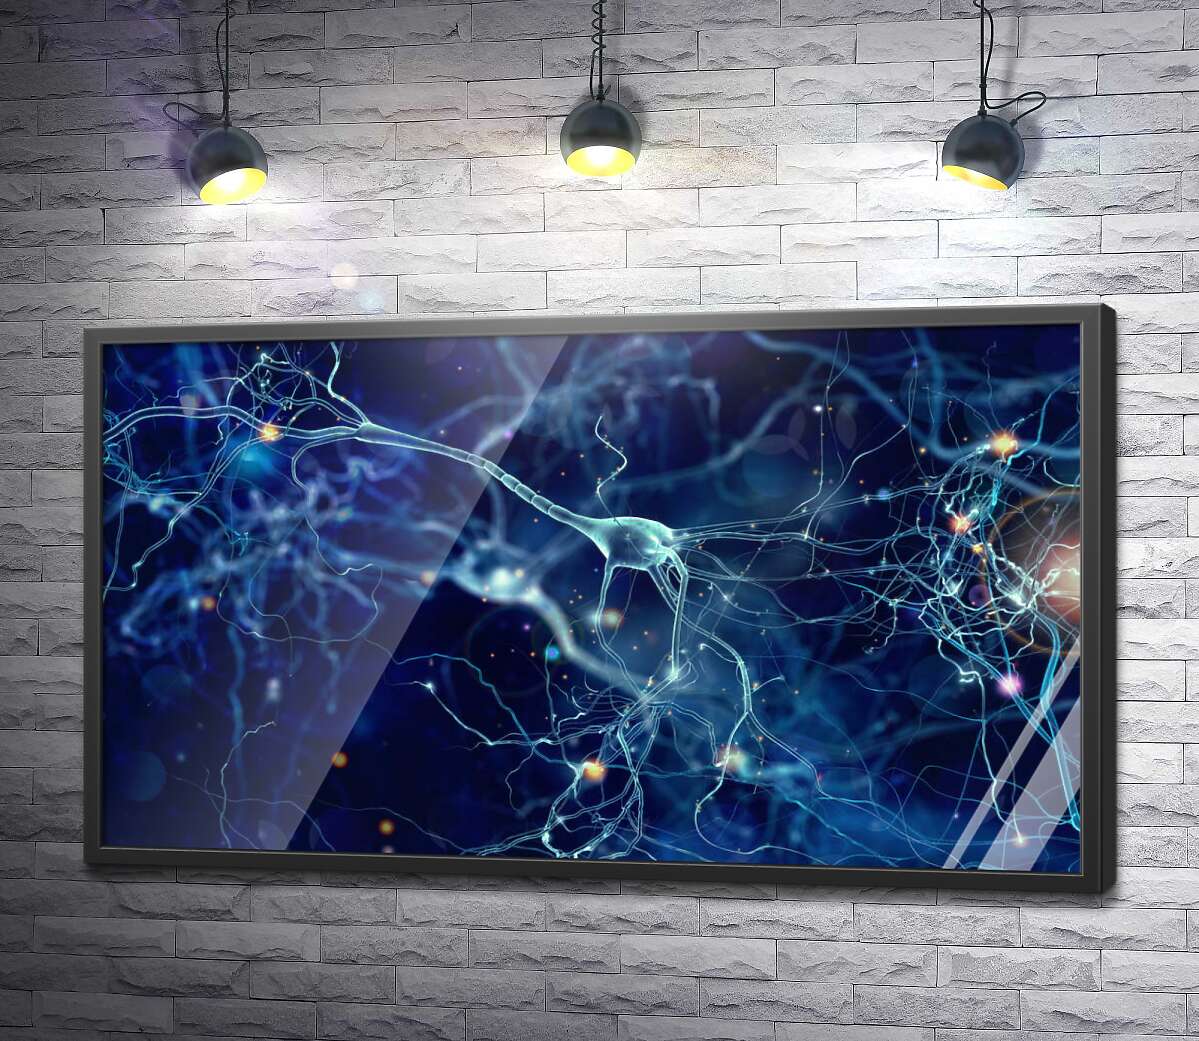 постер Об'ємне зображення нервової клітини